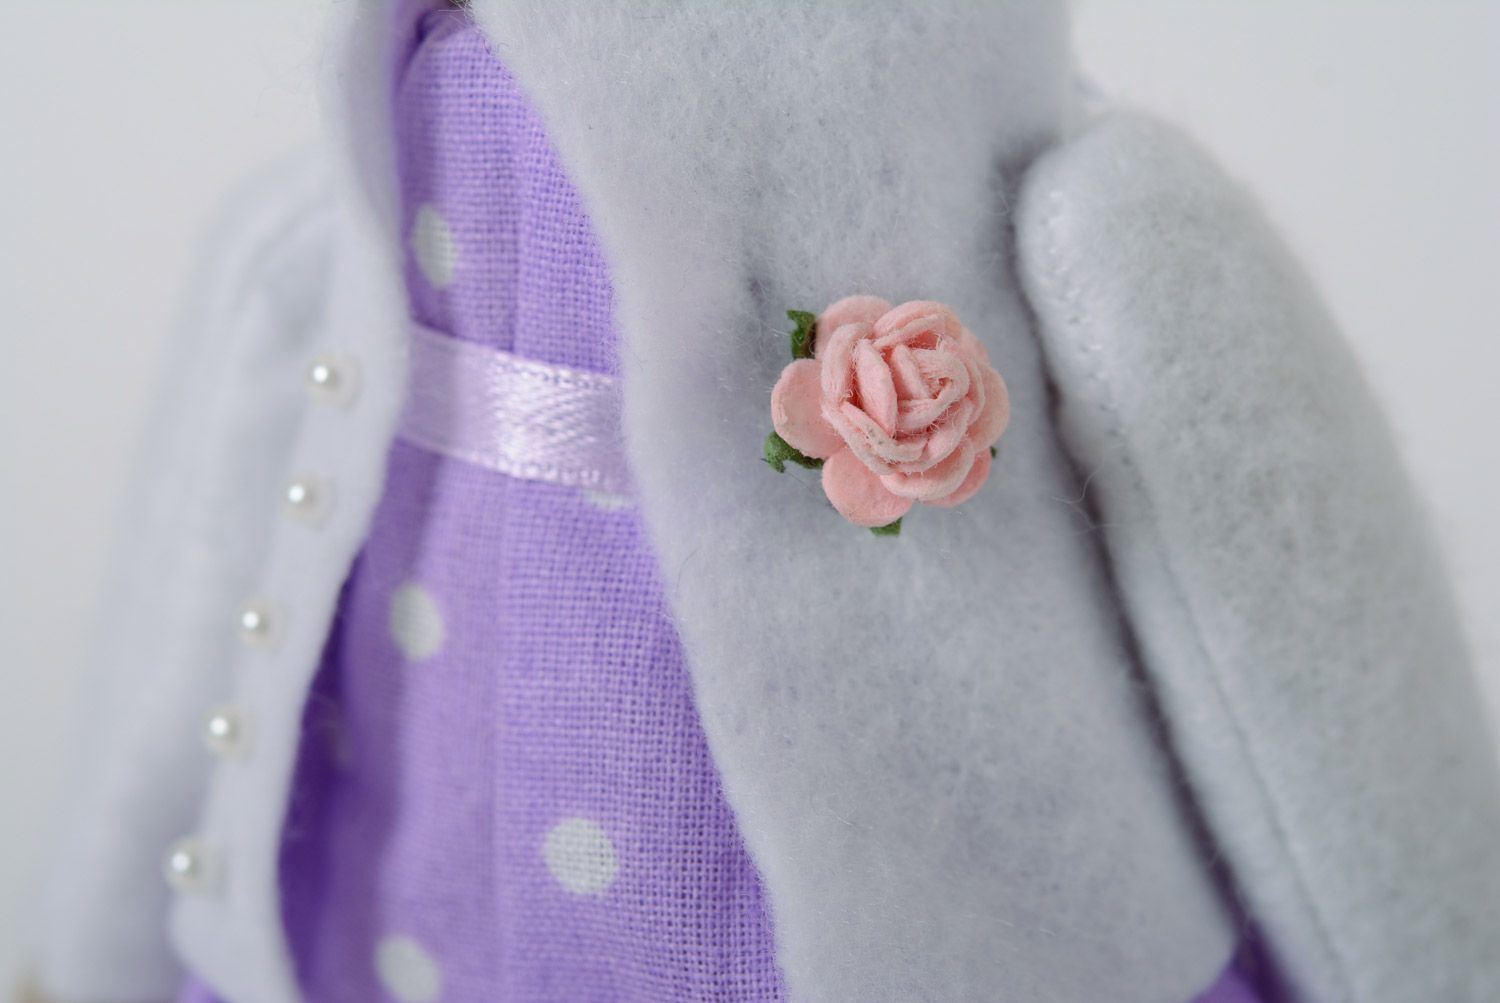 Beau jouet mou fait main lapin en coton et jersey de couleur lilas décor maison photo 4